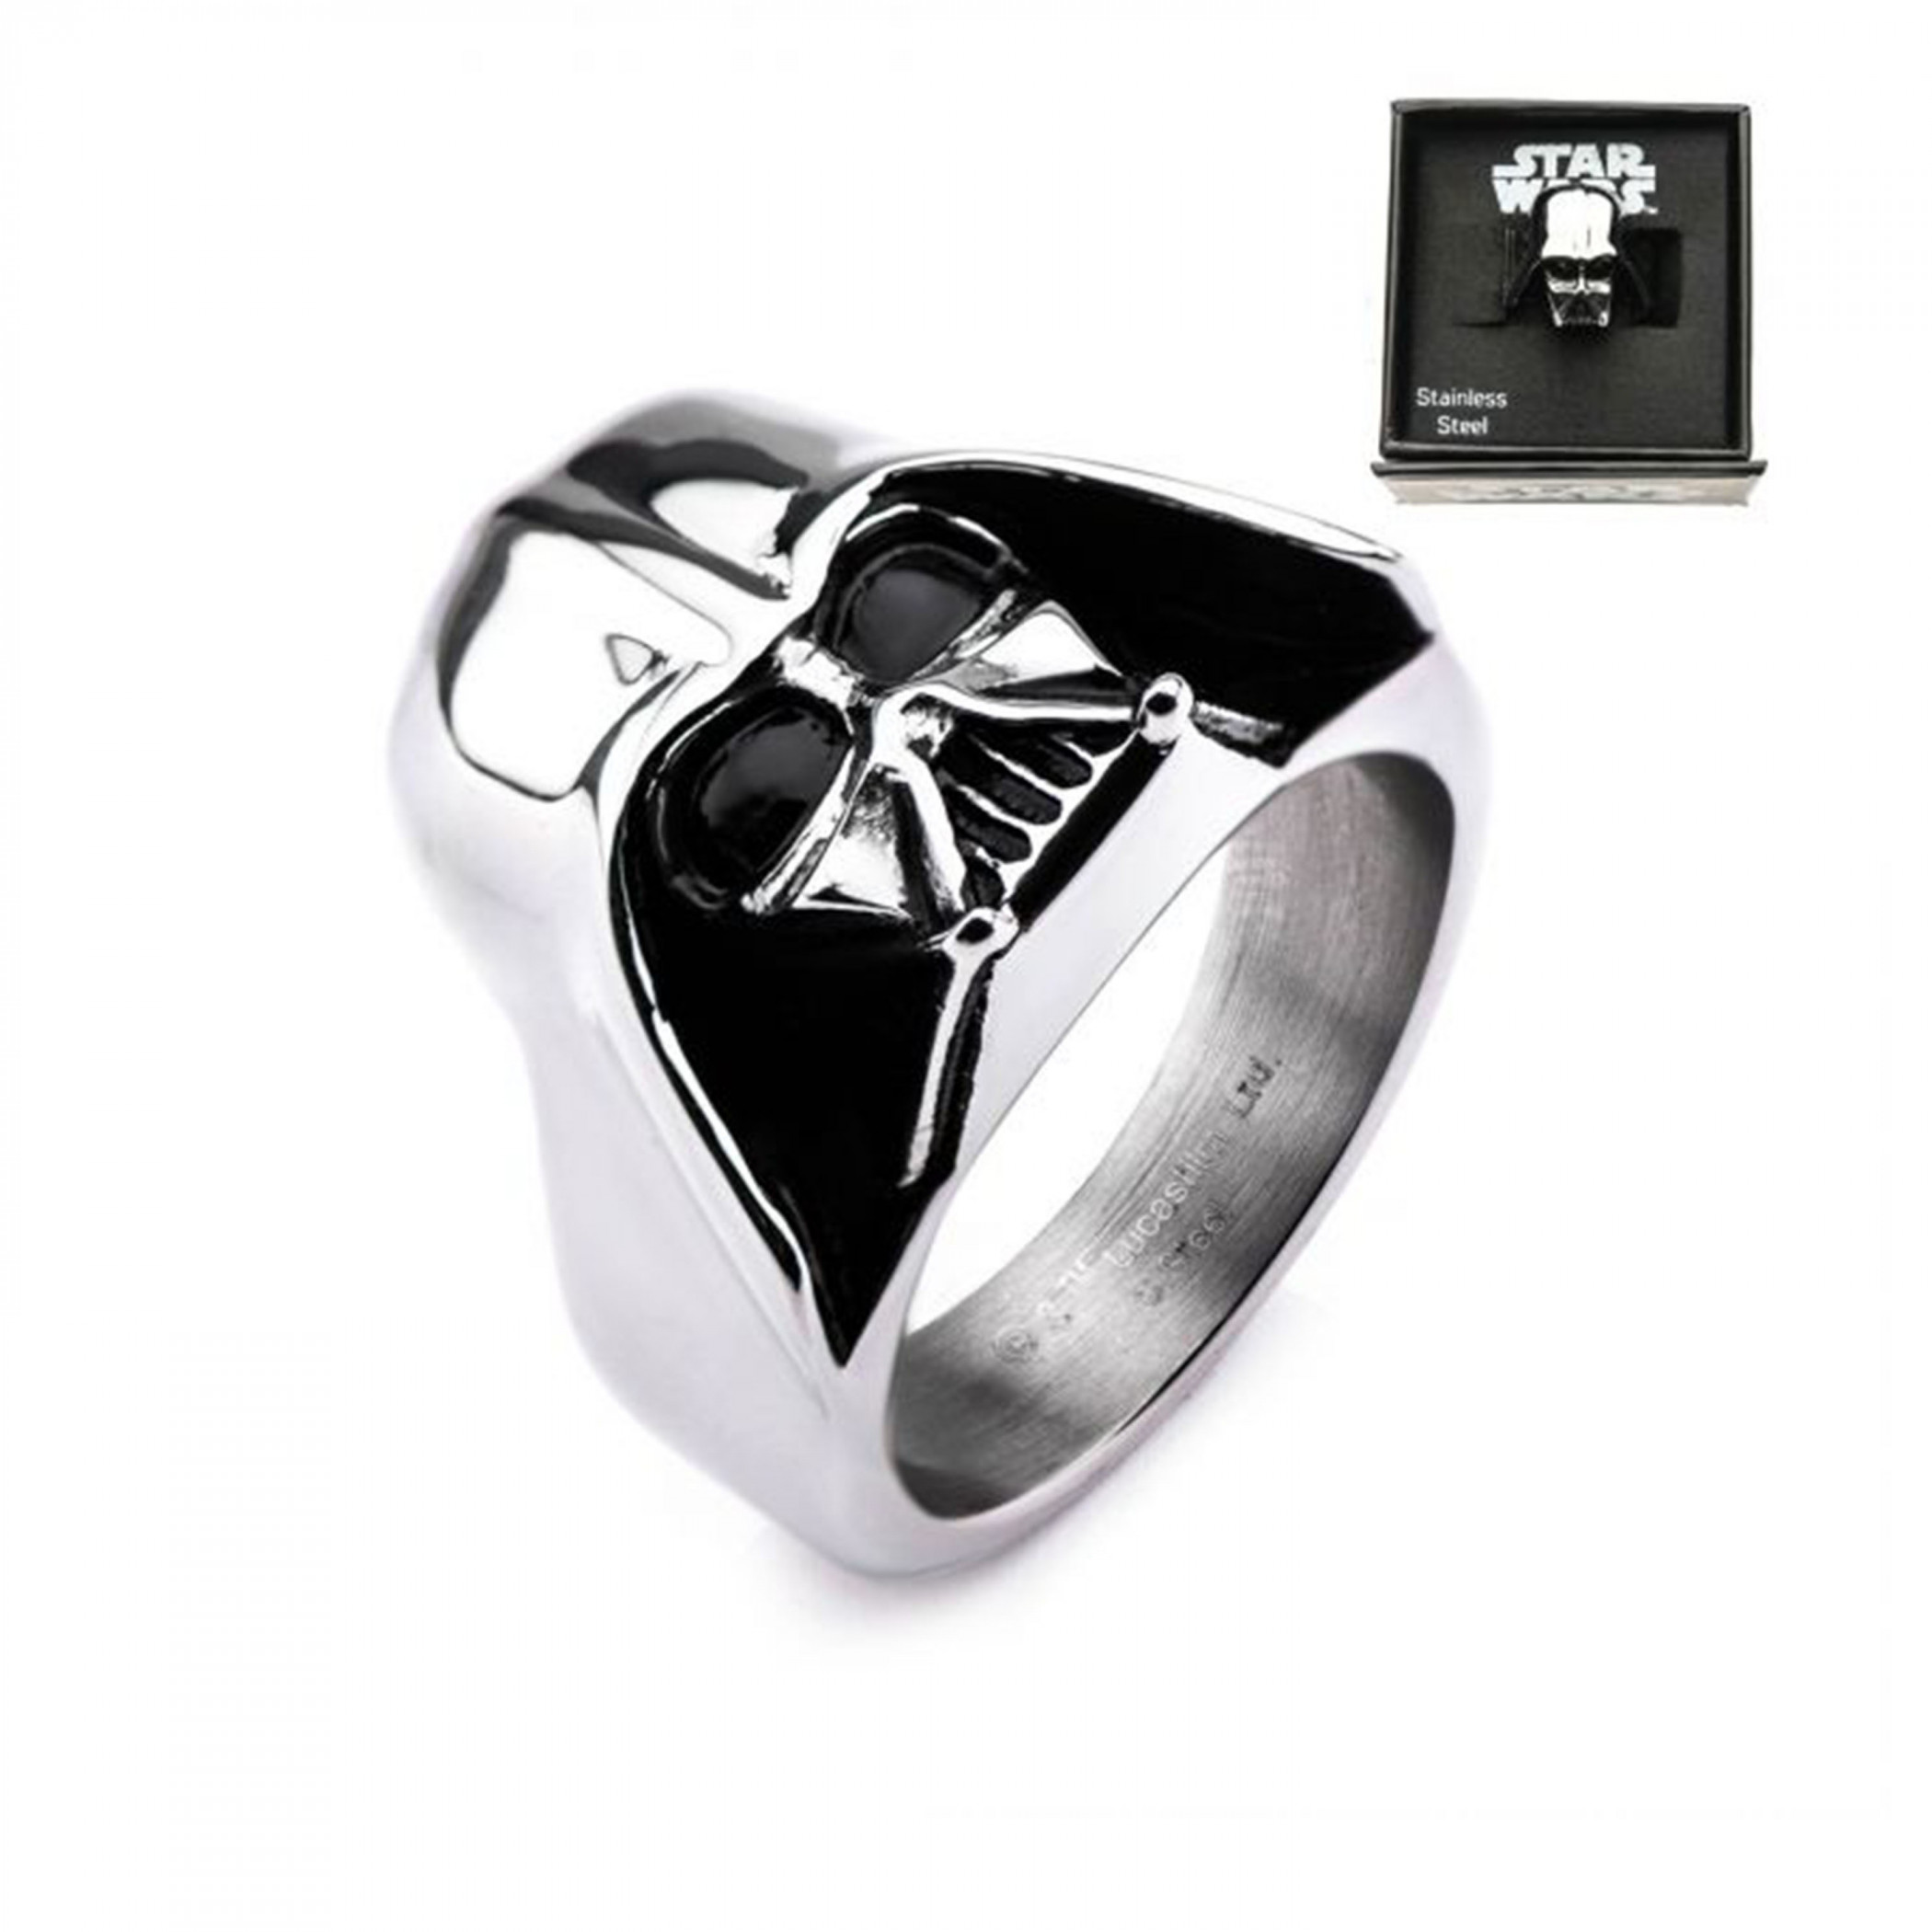 Star Wars Darth Vader Silver Helmet Ring